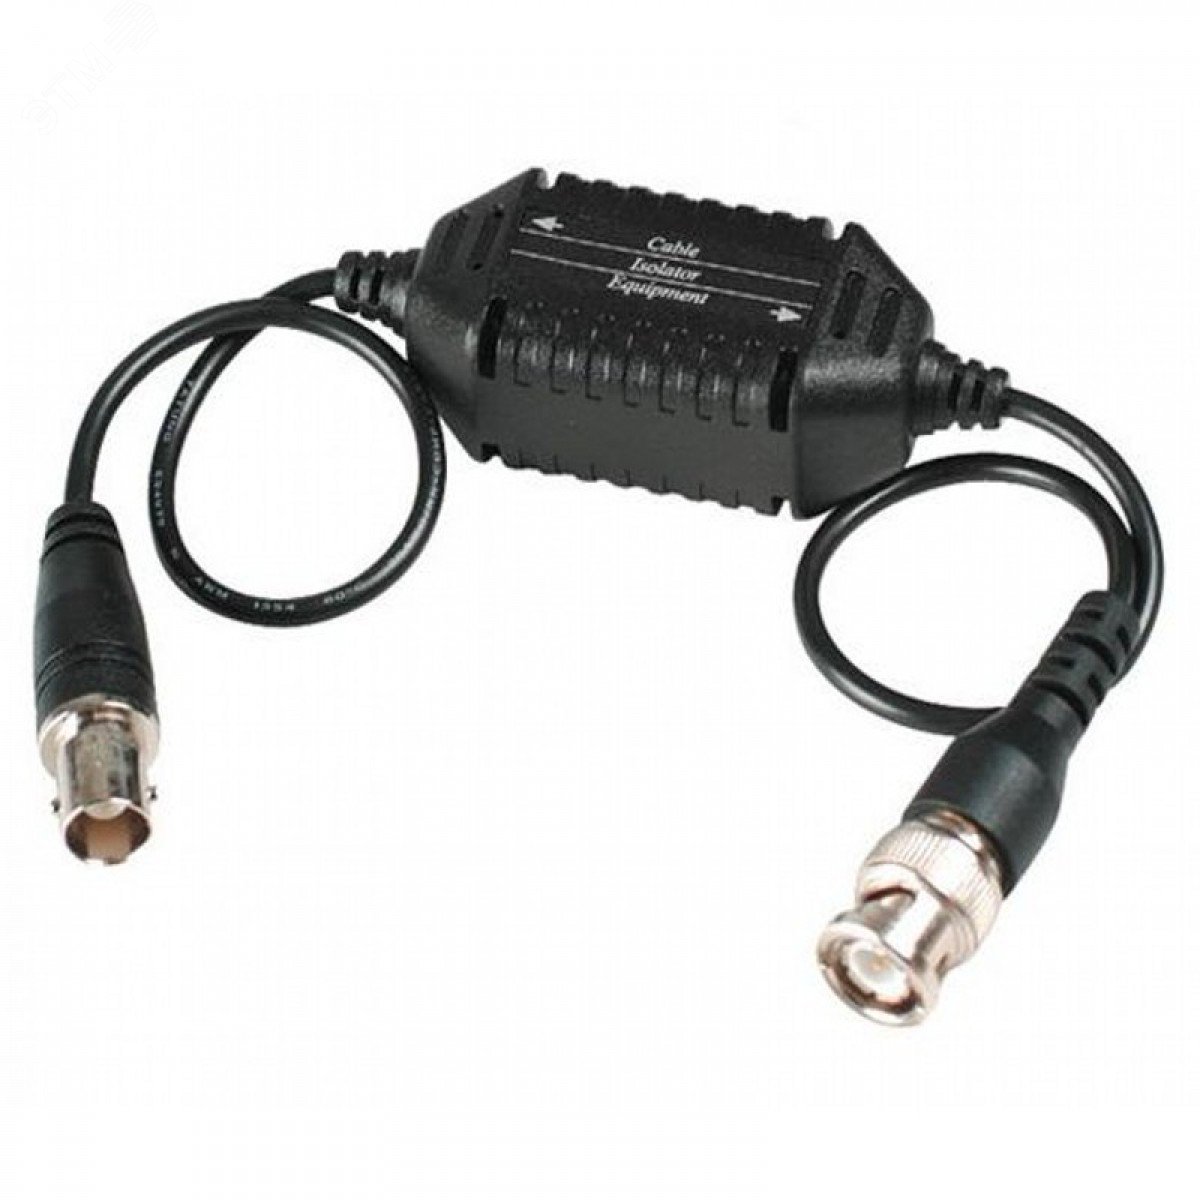 Изолятор коаксиального кабеля для защиты от искажений по земле. BNC-BNC GL001 SC&T